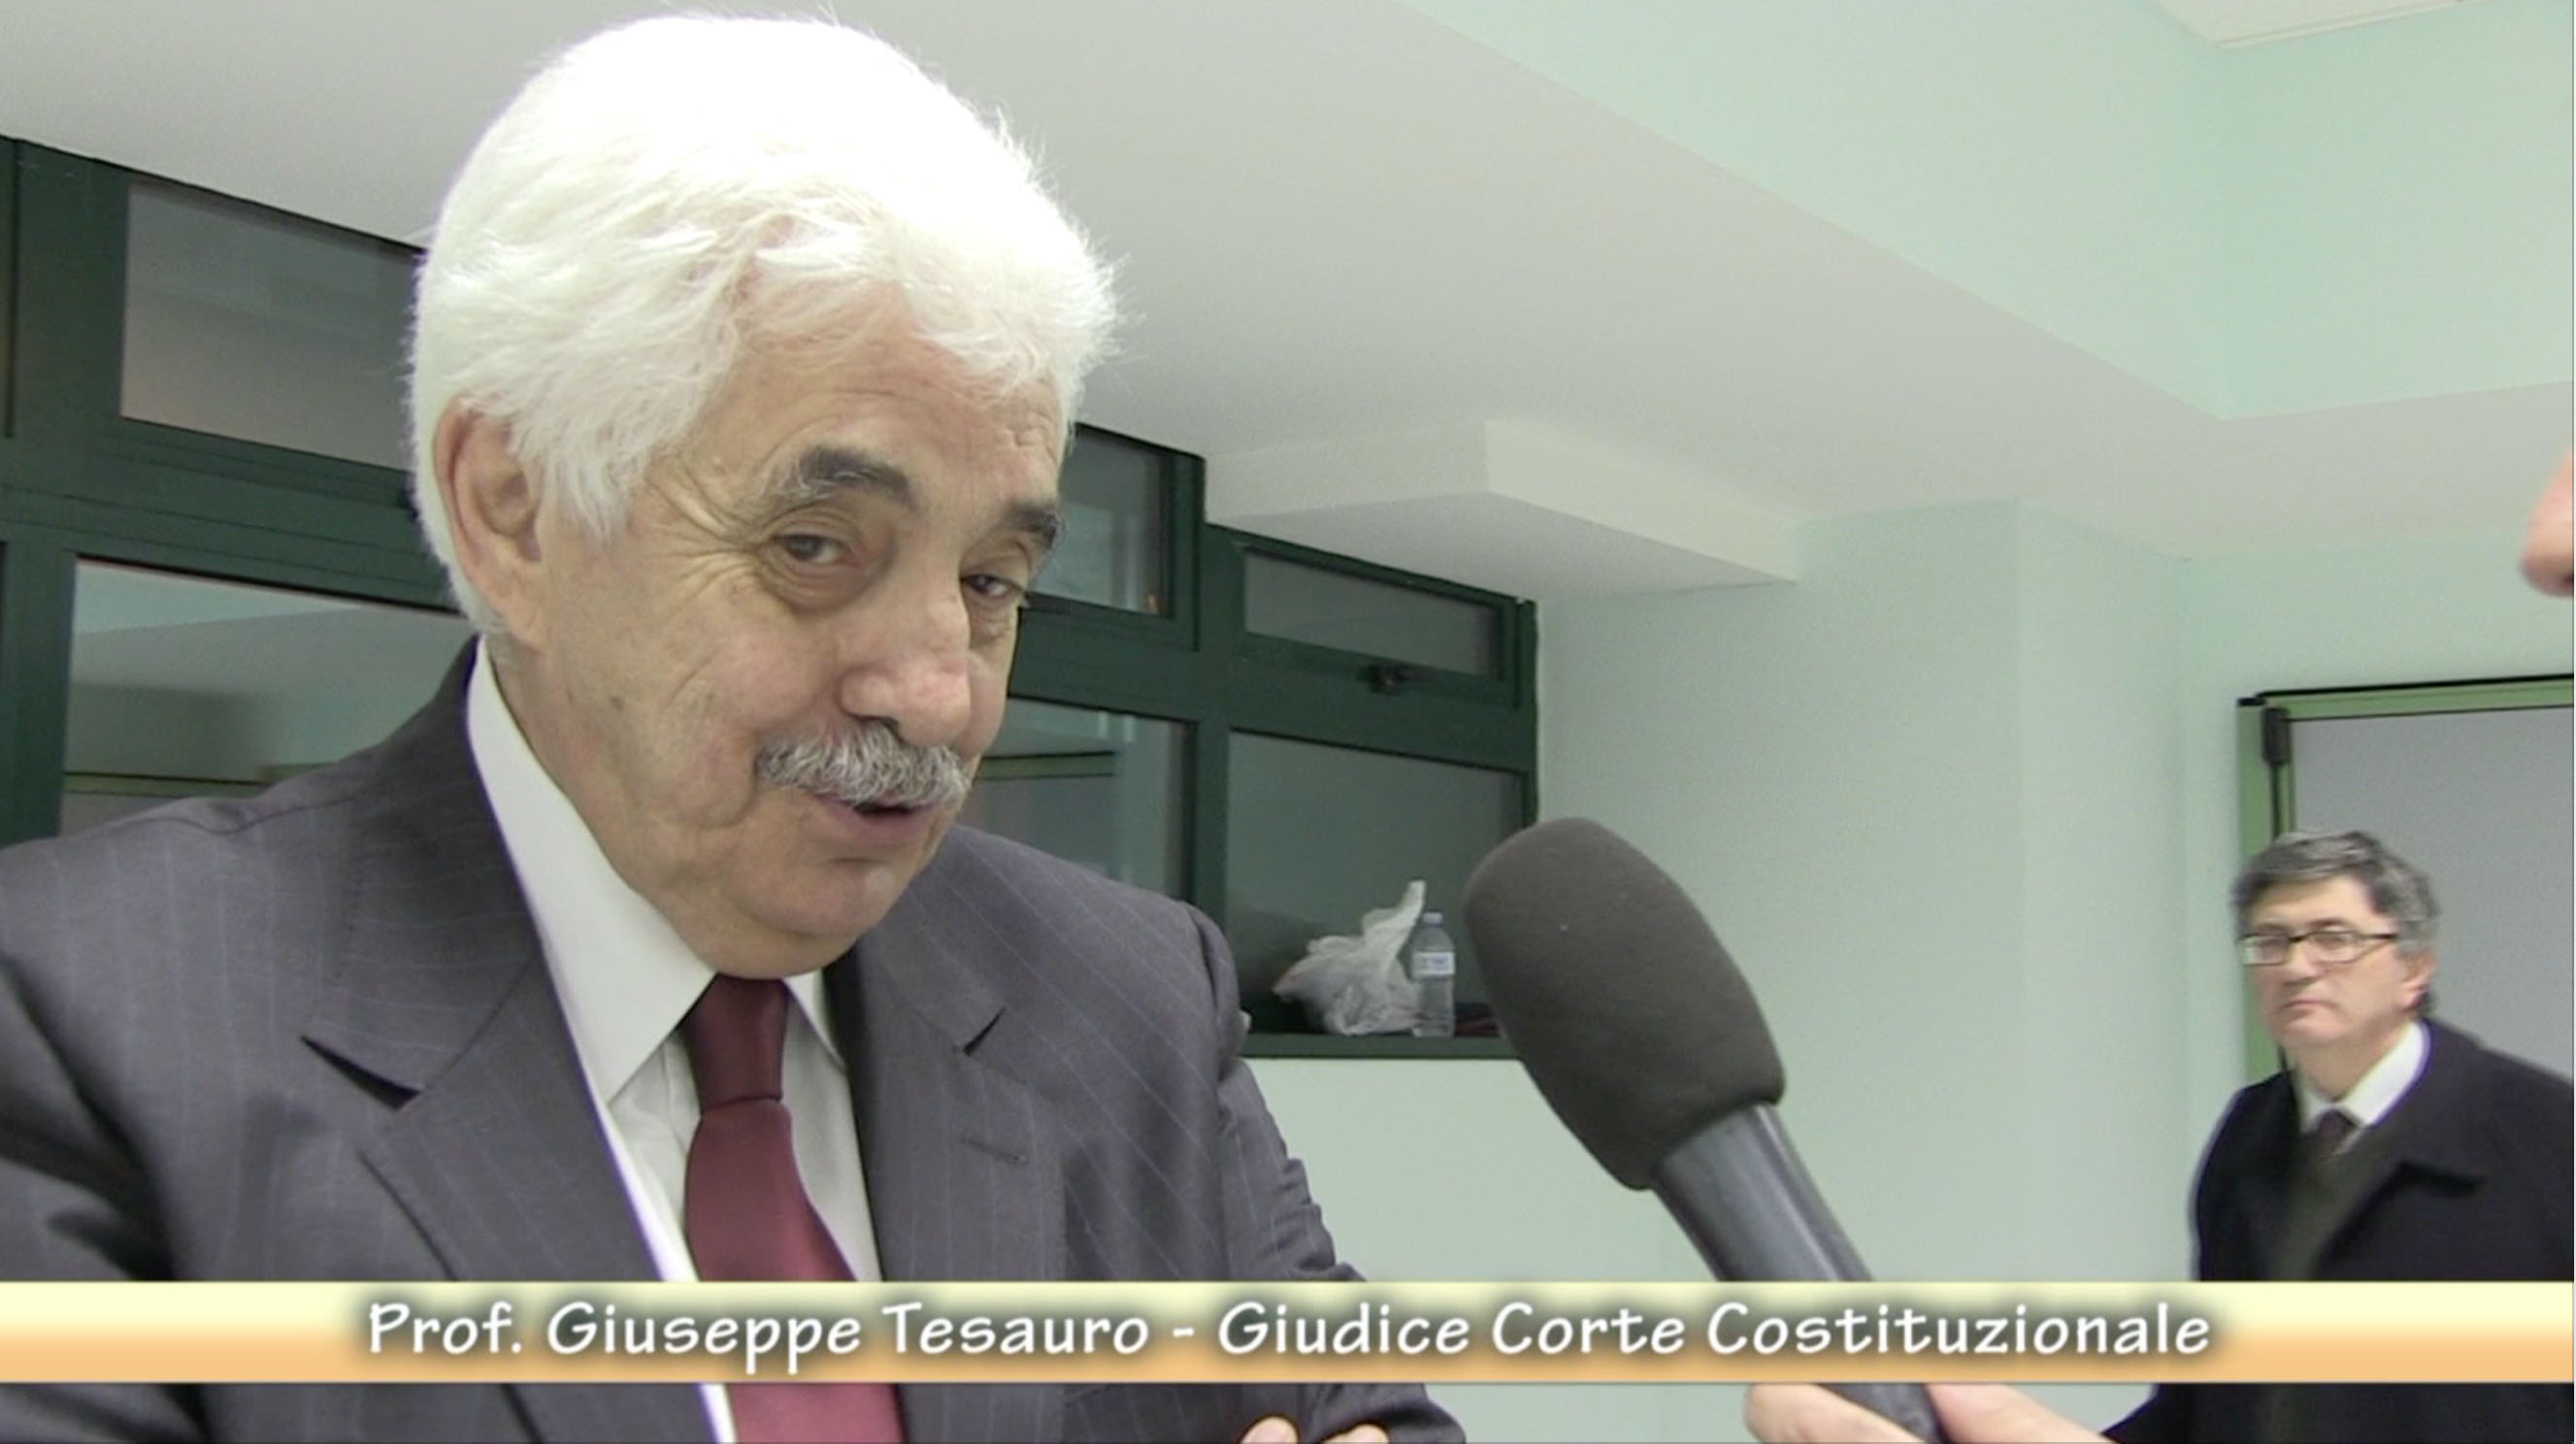 Giuseppe Tesauro - Giudice Corte Costituzionale